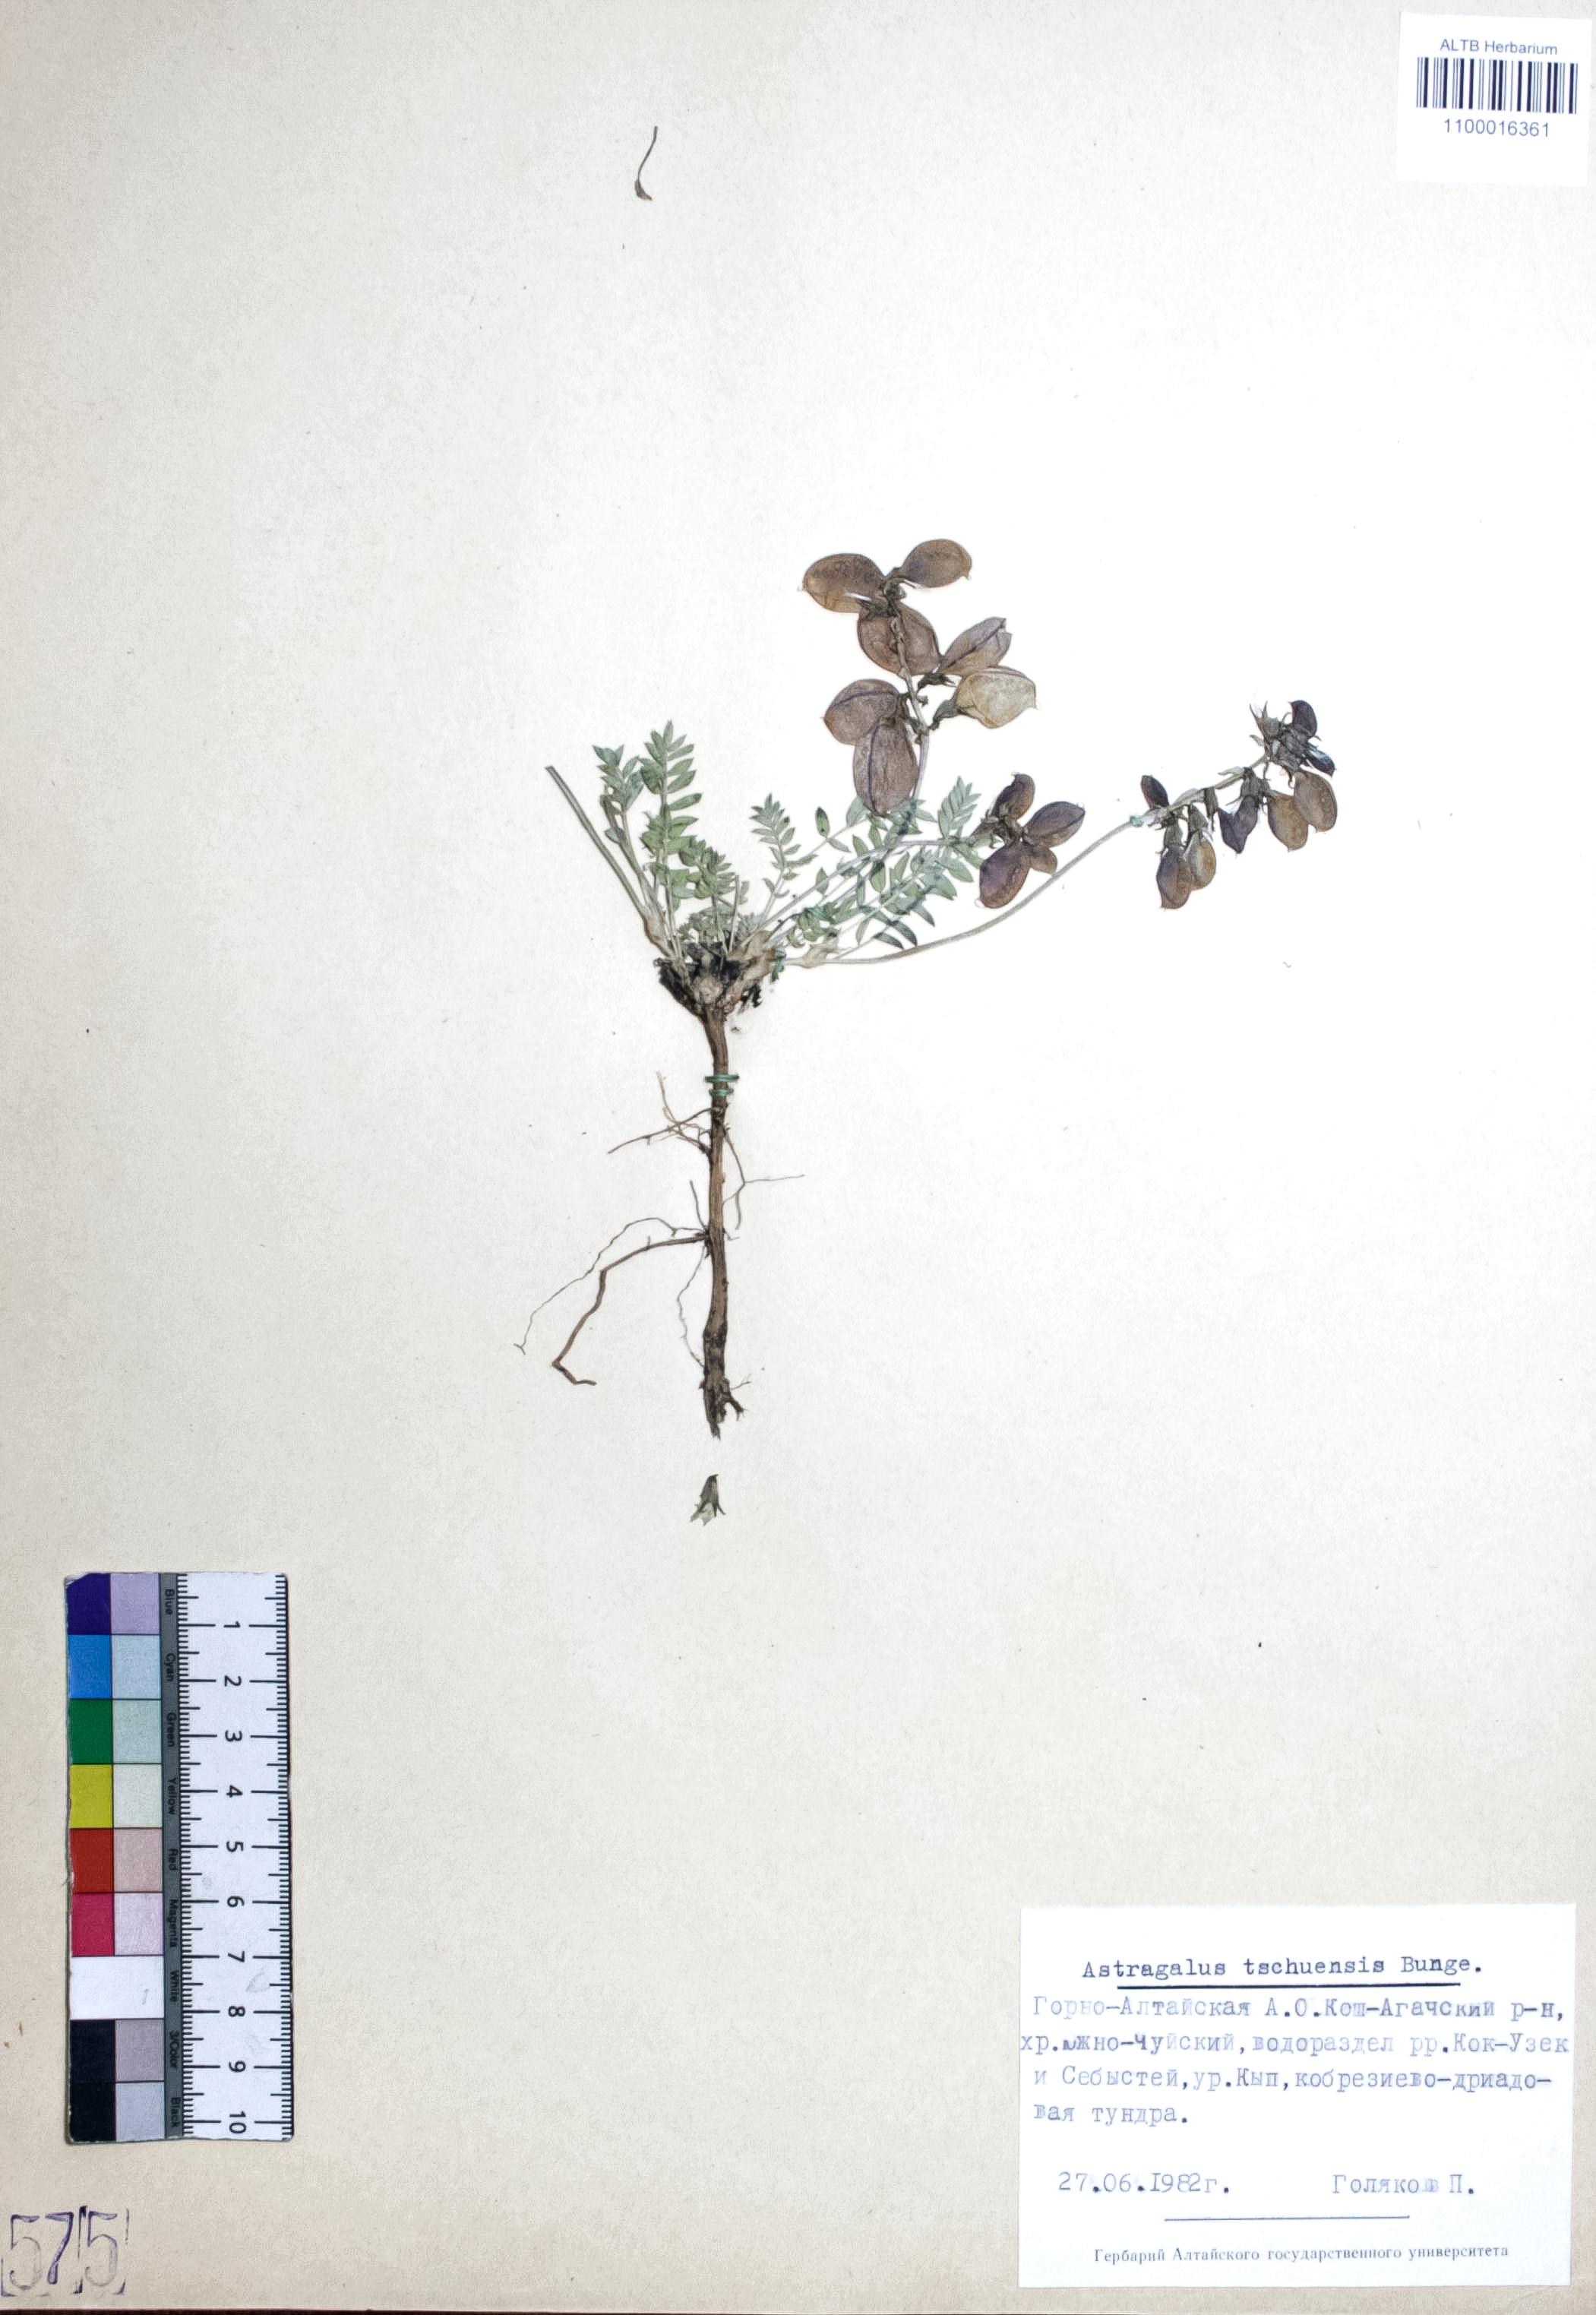 Astragalus tschuensis Bunge. 